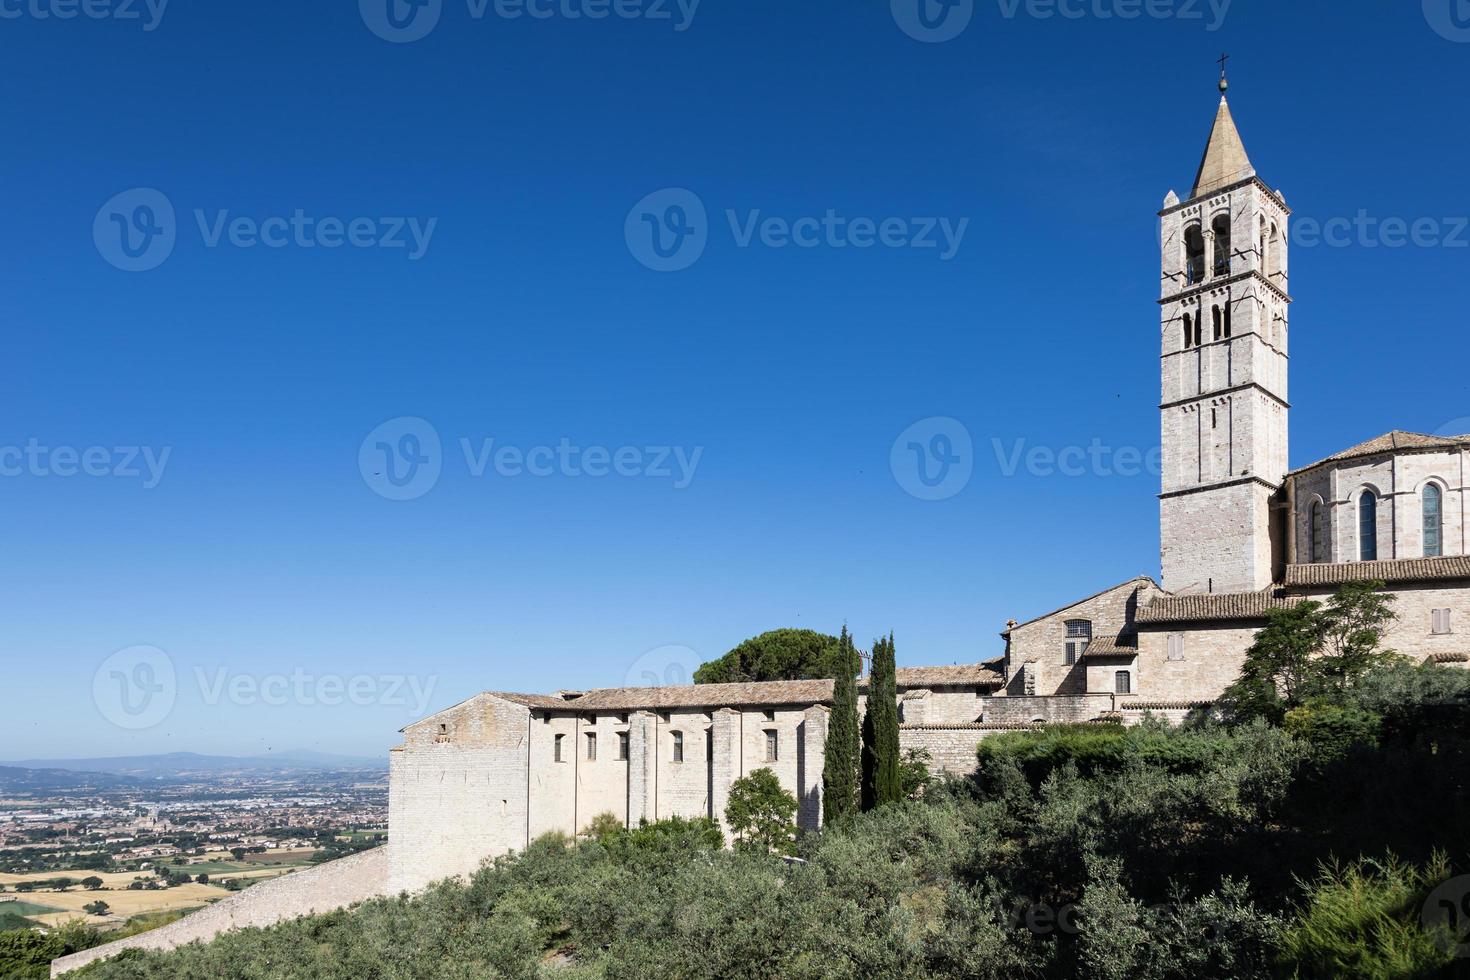 kerk in het dorp Assisi in de regio Umbrië, Italië. de stad staat bekend om de belangrijkste Italiaanse basiliek gewijd aan st. francis-san francesco. foto